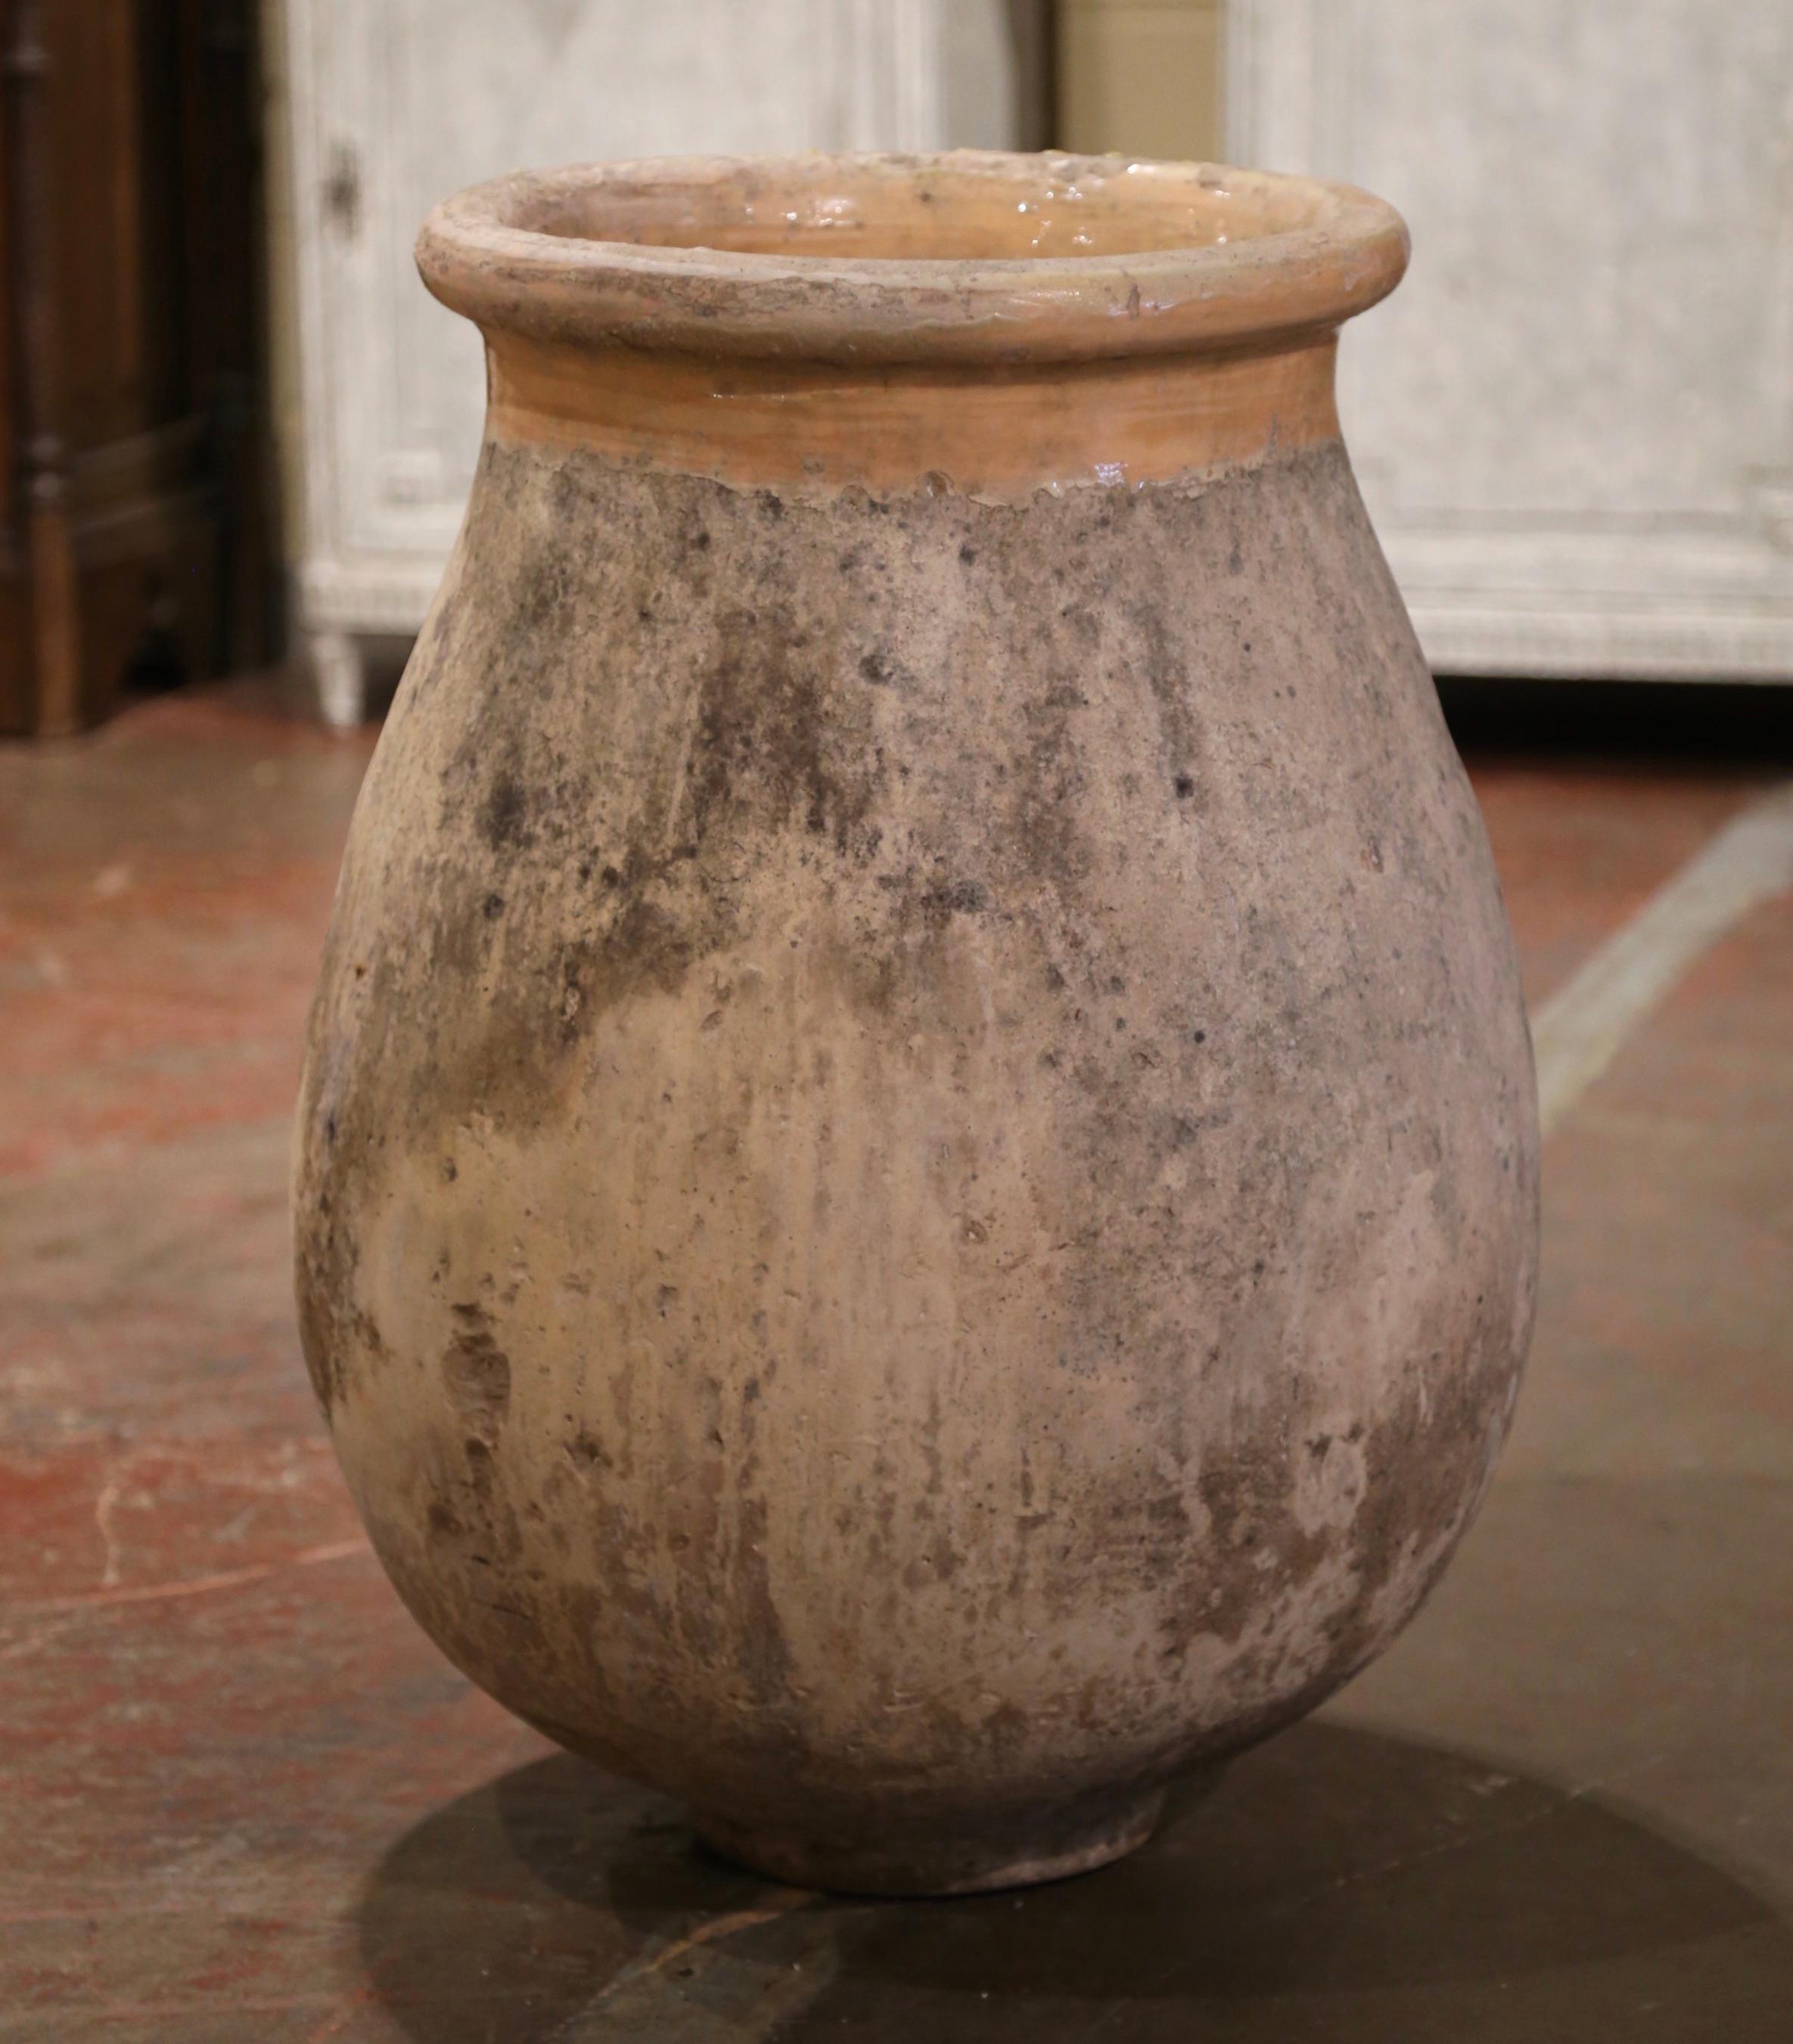 Cette grande jarre à olives ancienne en faïence a été créée à Biot, dans le sud de la France, vers 1760. Fabriqué en argile blonde et de couleur neutre, le vase en terre cuite a une forme ronde et bulbeuse traditionnelle. Ce pot rustique et usé par